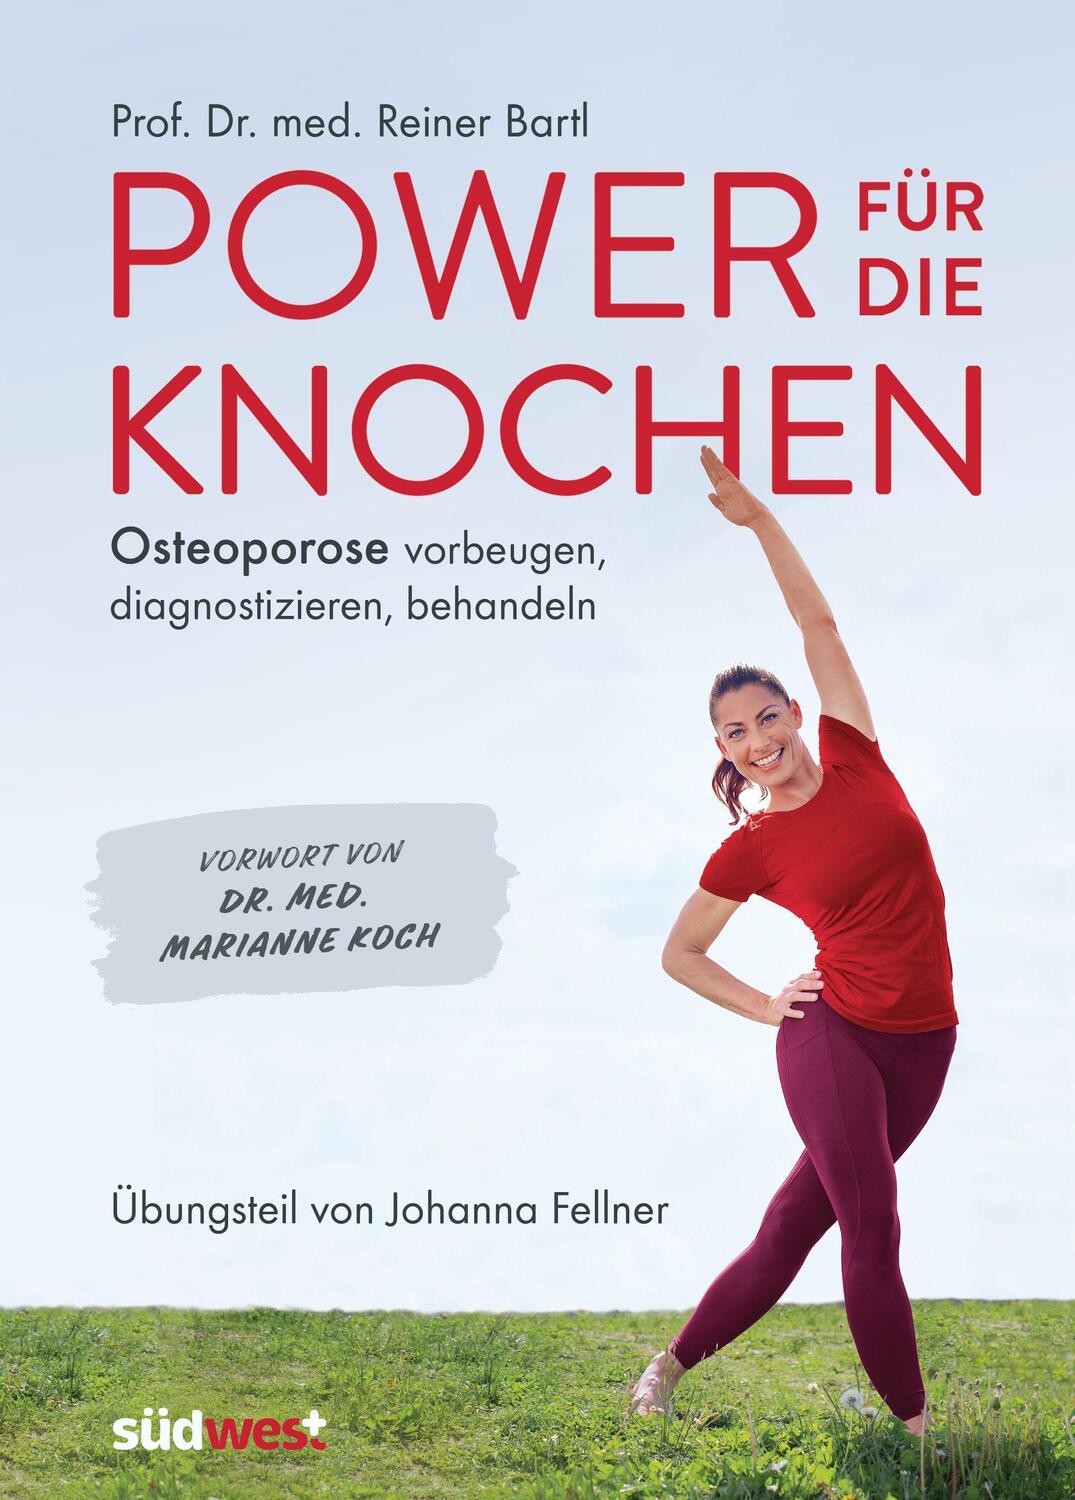 Power für die Knochen - Osteoporose vorbeugen, diagnostizieren, behandeln - Übungsteil von Johanna Fellner - Bartl, Reiner